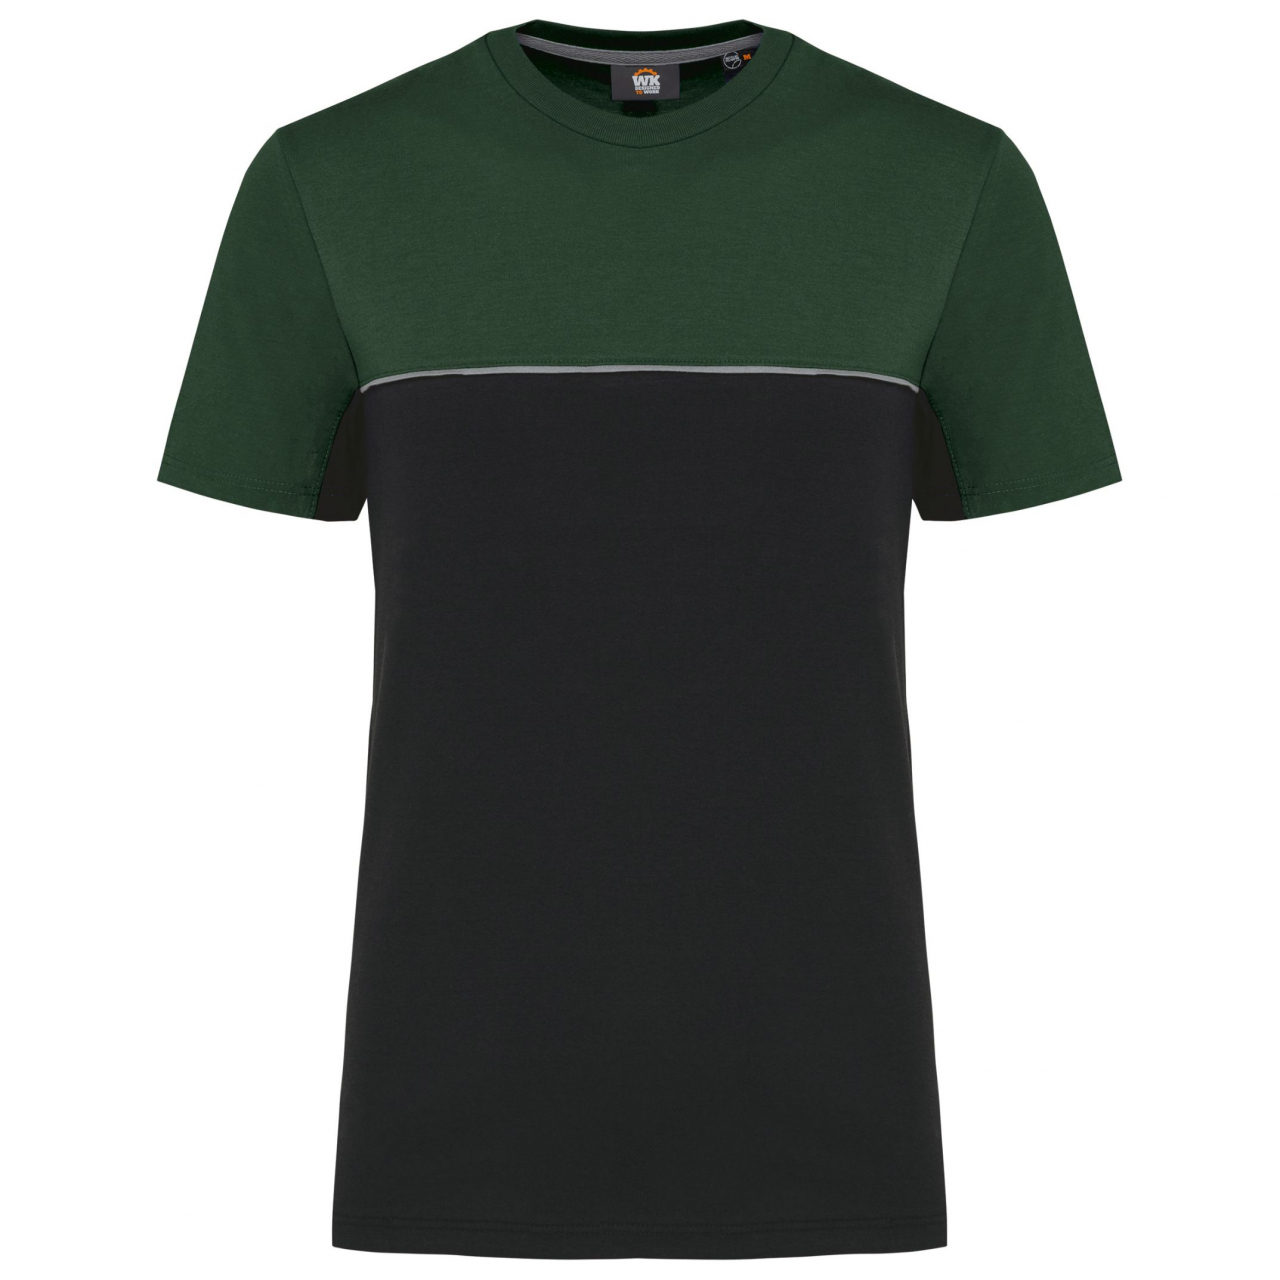 Pracovní triko dvoubarevné WK - černé-zelené, XXL